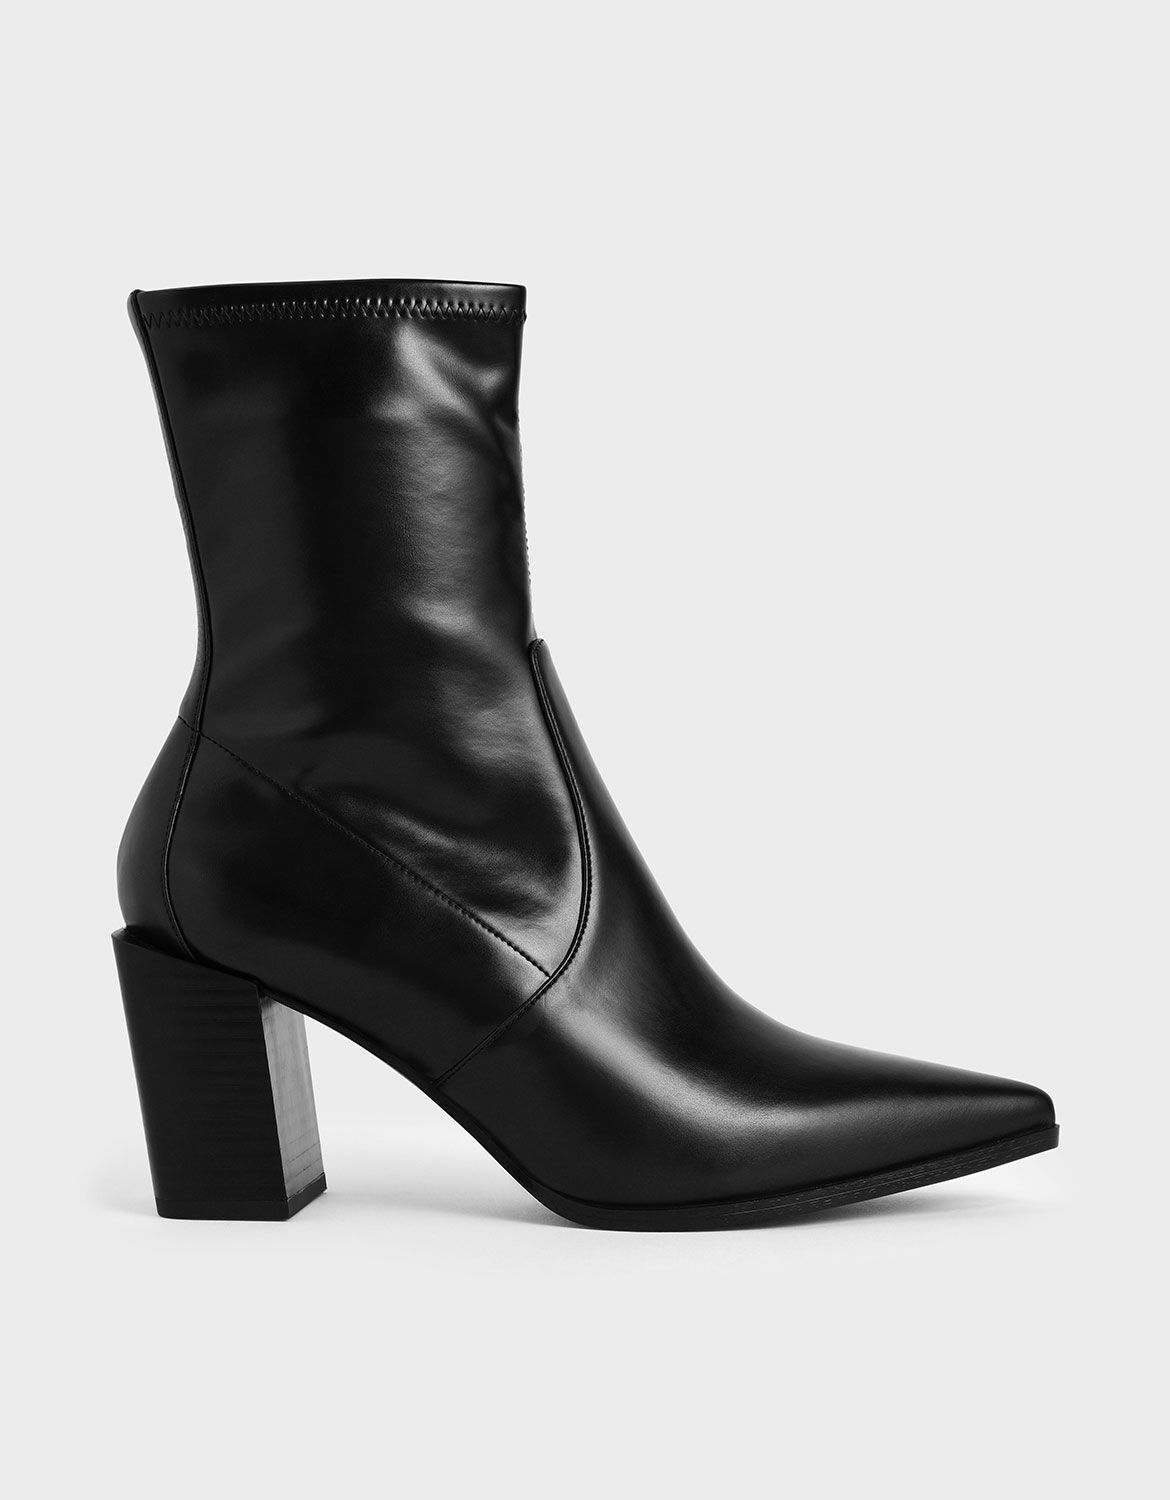 black stacked heel booties